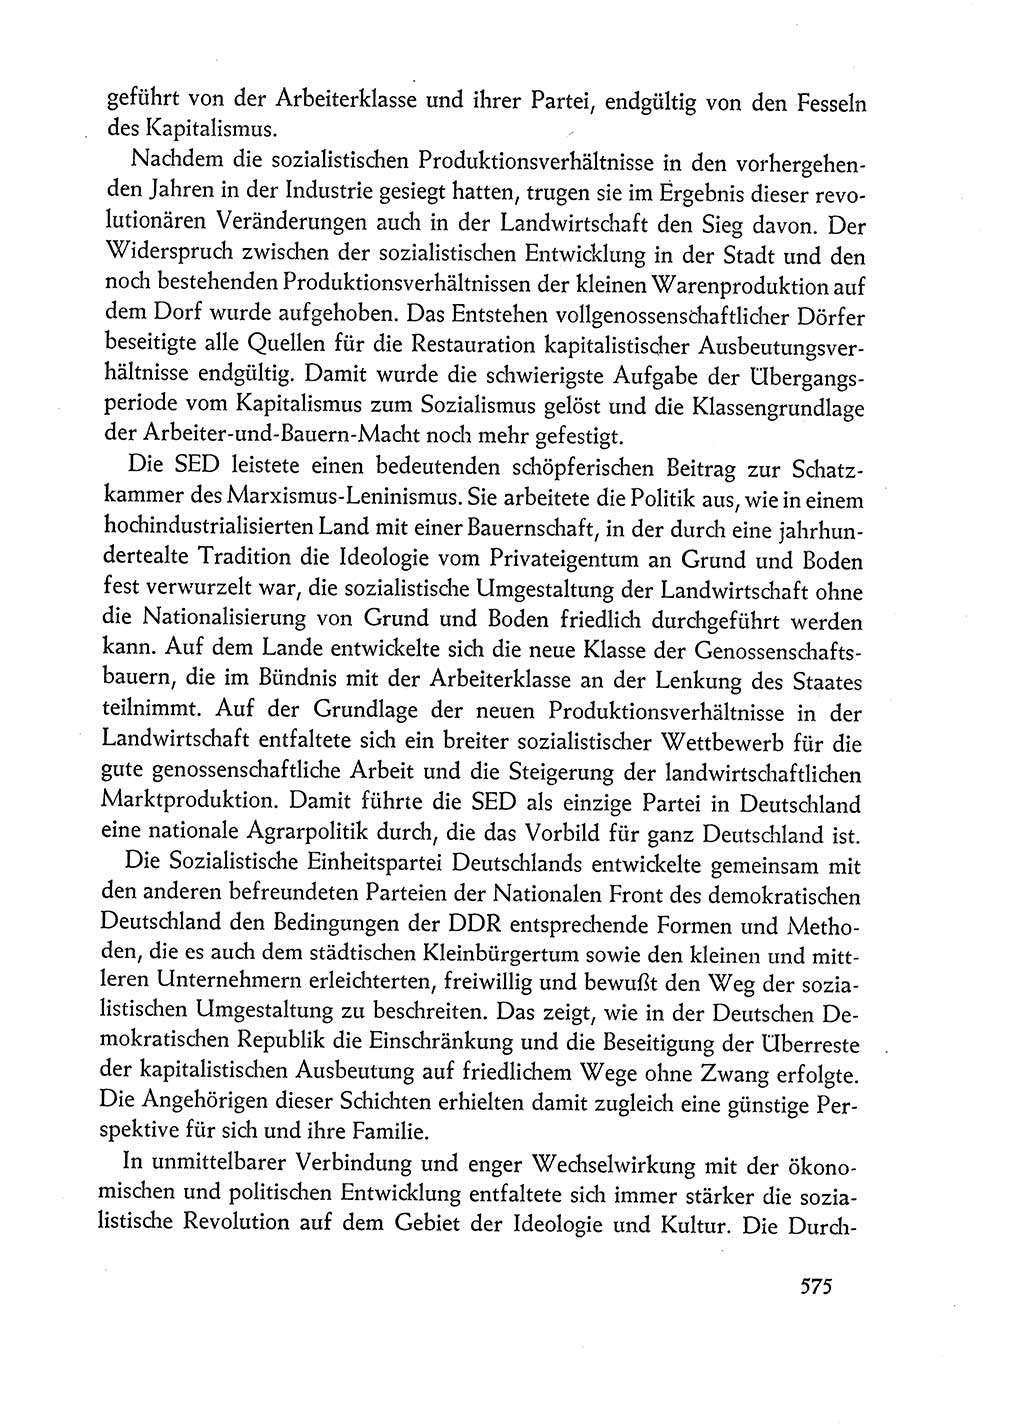 Dokumente der Sozialistischen Einheitspartei Deutschlands (SED) [Deutsche Demokratische Republik (DDR)] 1962-1963, Seite 575 (Dok. SED DDR 1962-1963, S. 575)